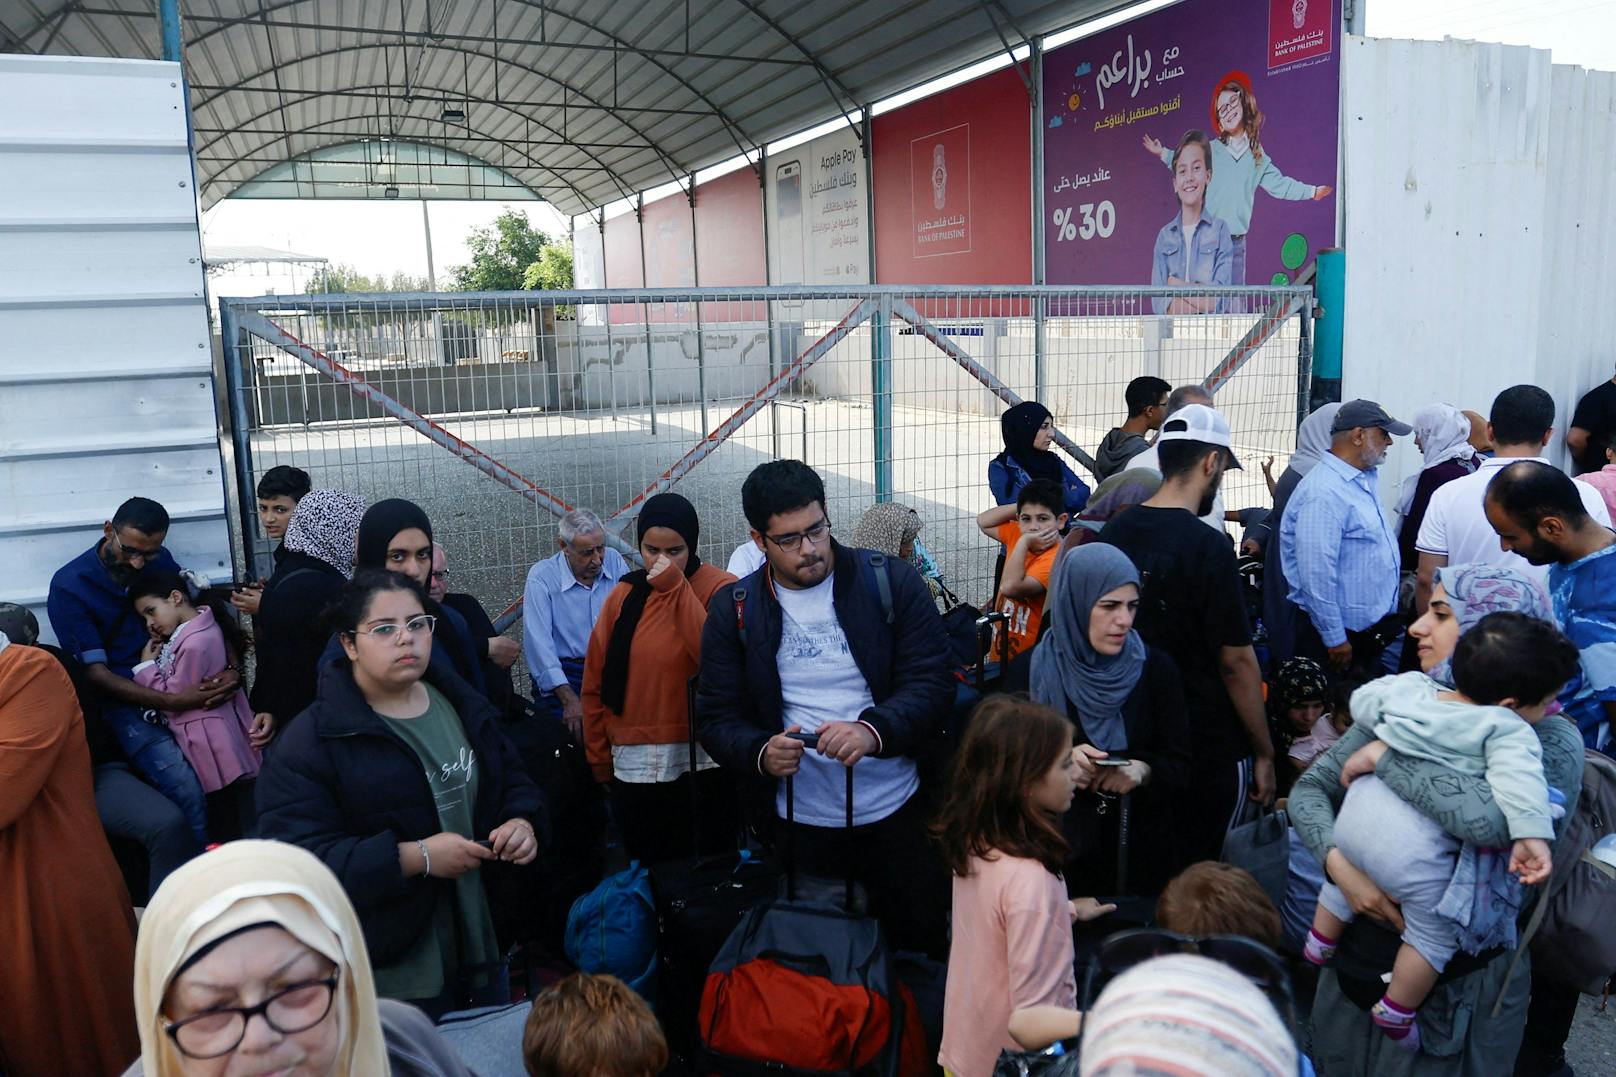 Palästinenser mit Doppelstaatsbürgerschaften vor dem geschlossenen Grenzübergang zu Ägypten.